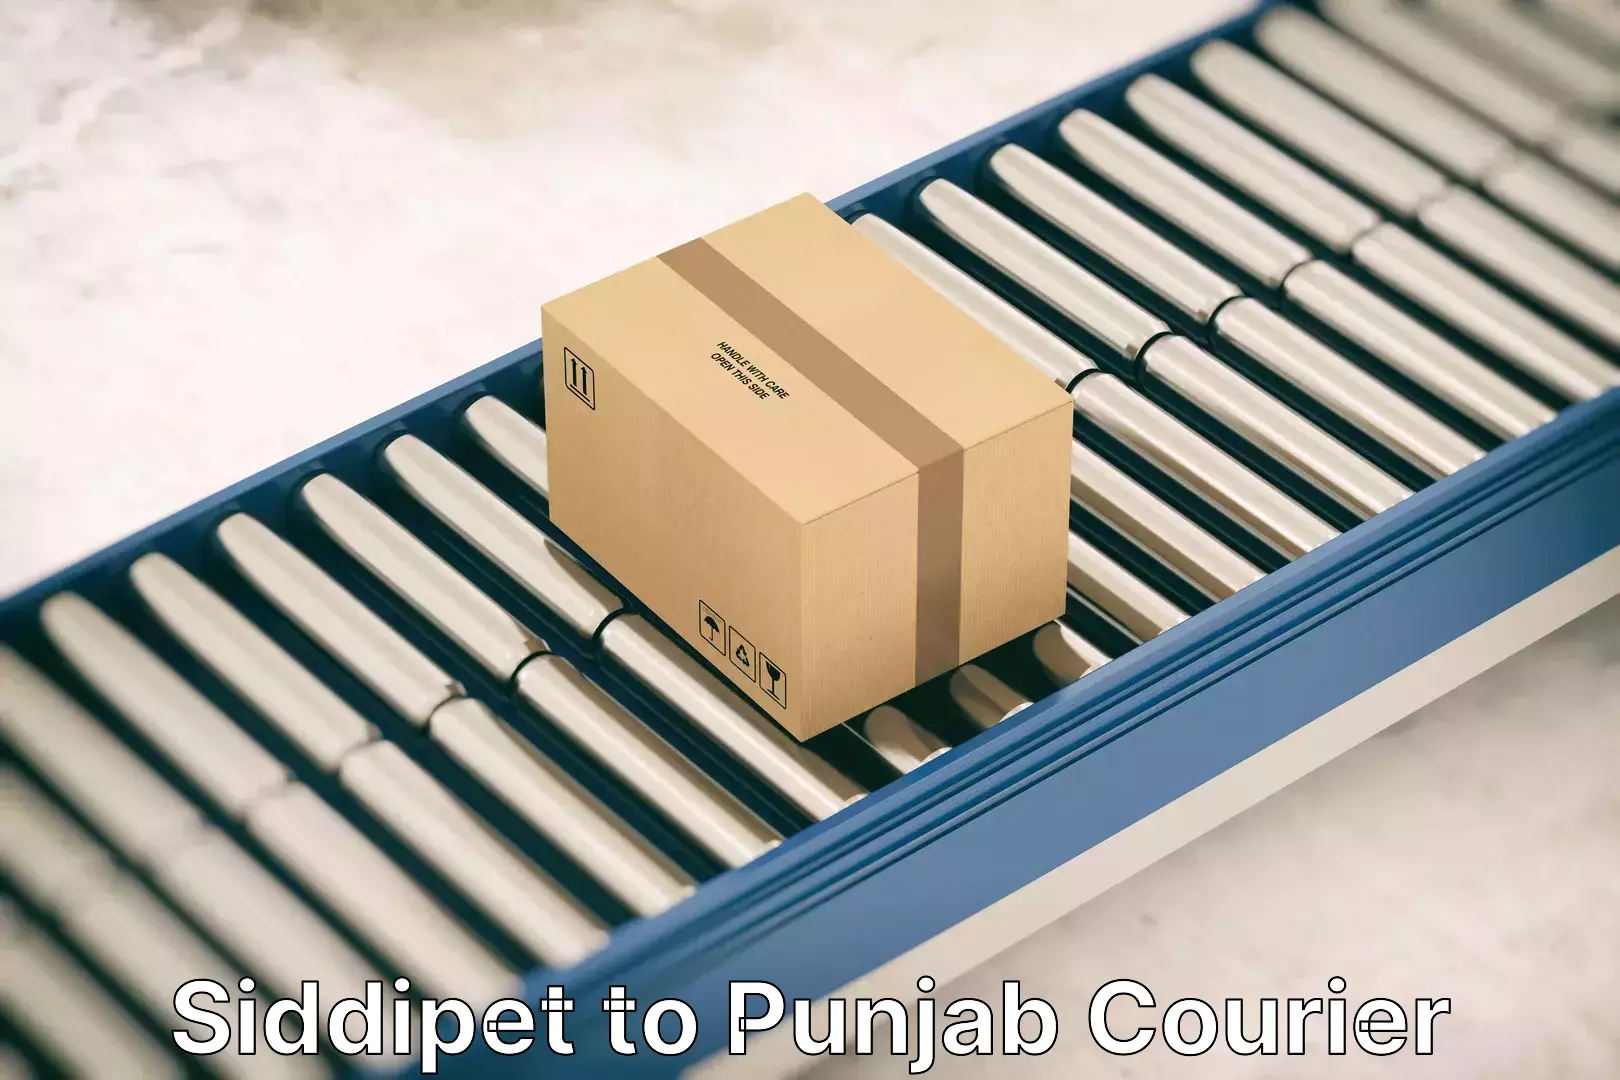 Home furniture moving Siddipet to Punjab